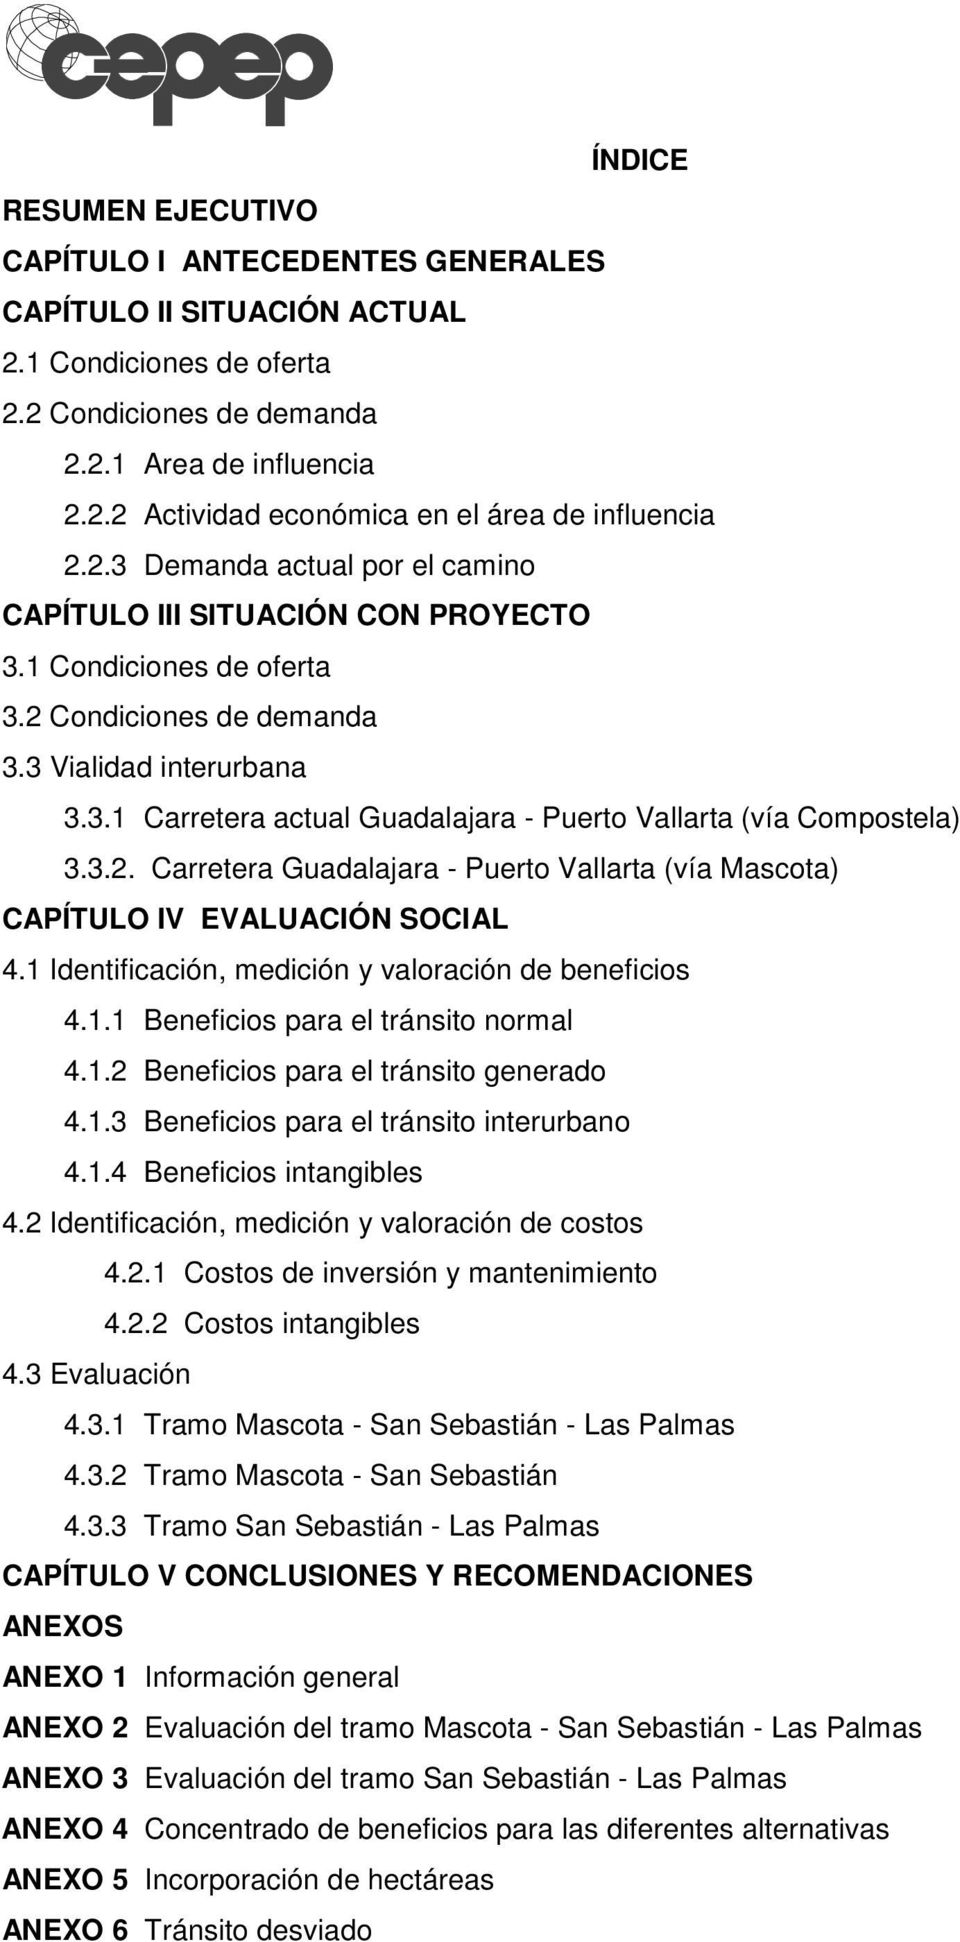 3.2. Carretera Guadalajara - Puerto Vallarta (vía Mascota) CAPÍTULO IV EVALUACIÓN SOCIAL 4.1 Identificación, medición y valoración de beneficios 4.1.1 Beneficios para el tránsito normal 4.1.2 Beneficios para el tránsito generado 4.